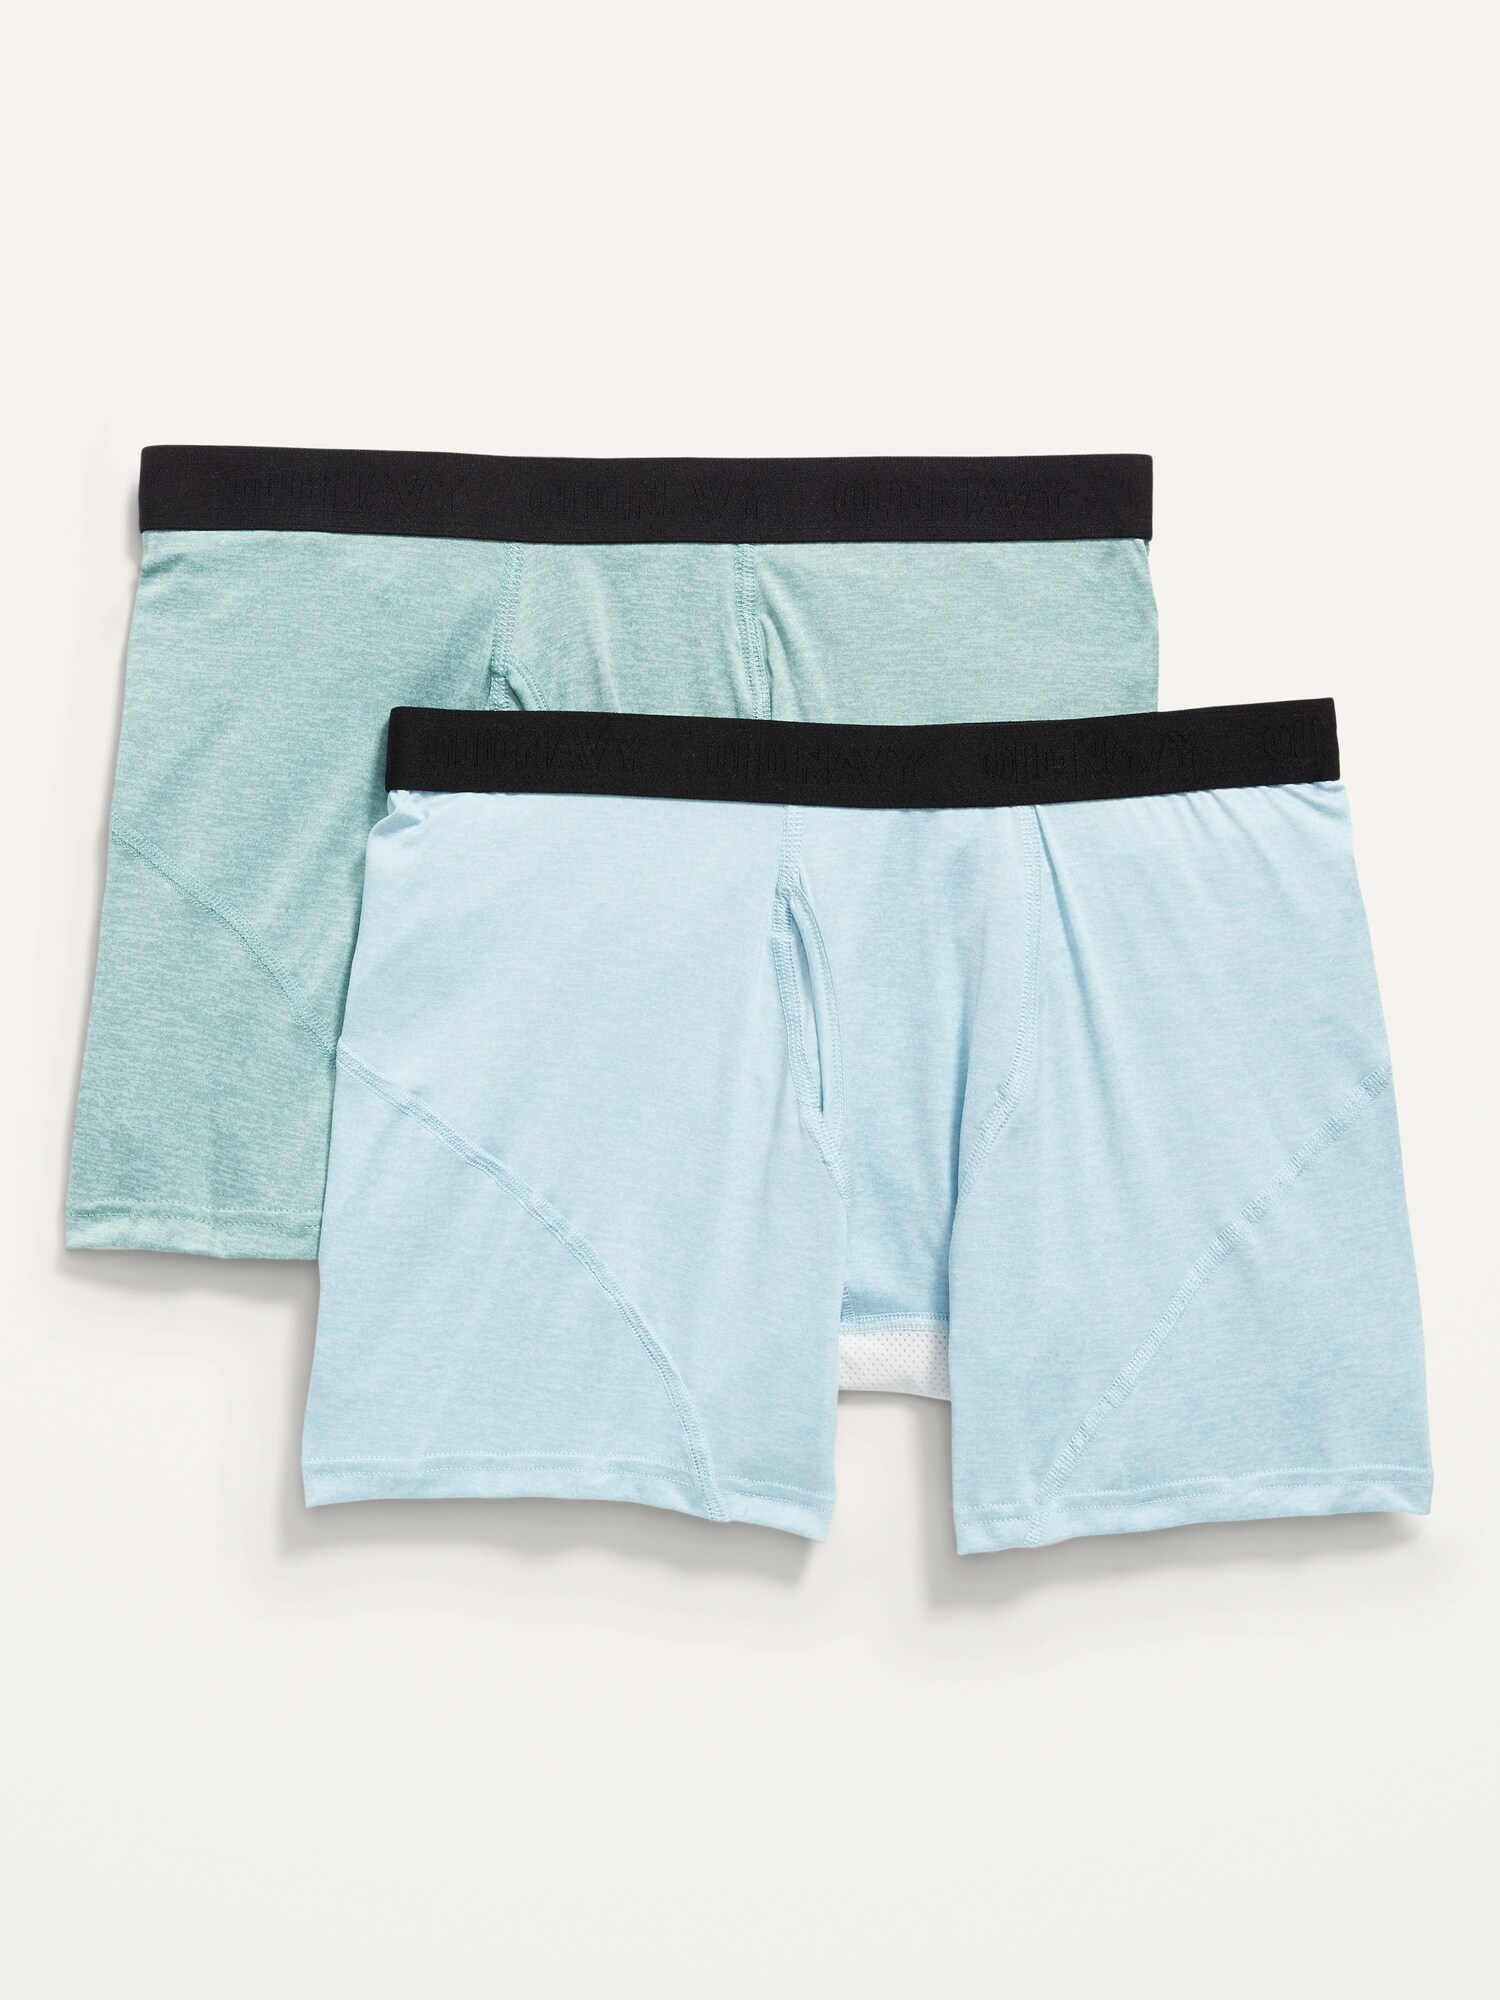 Go-Dry Cool Tech Boxer-Briefs Underwear 2-Pack -- 5-inch inseam